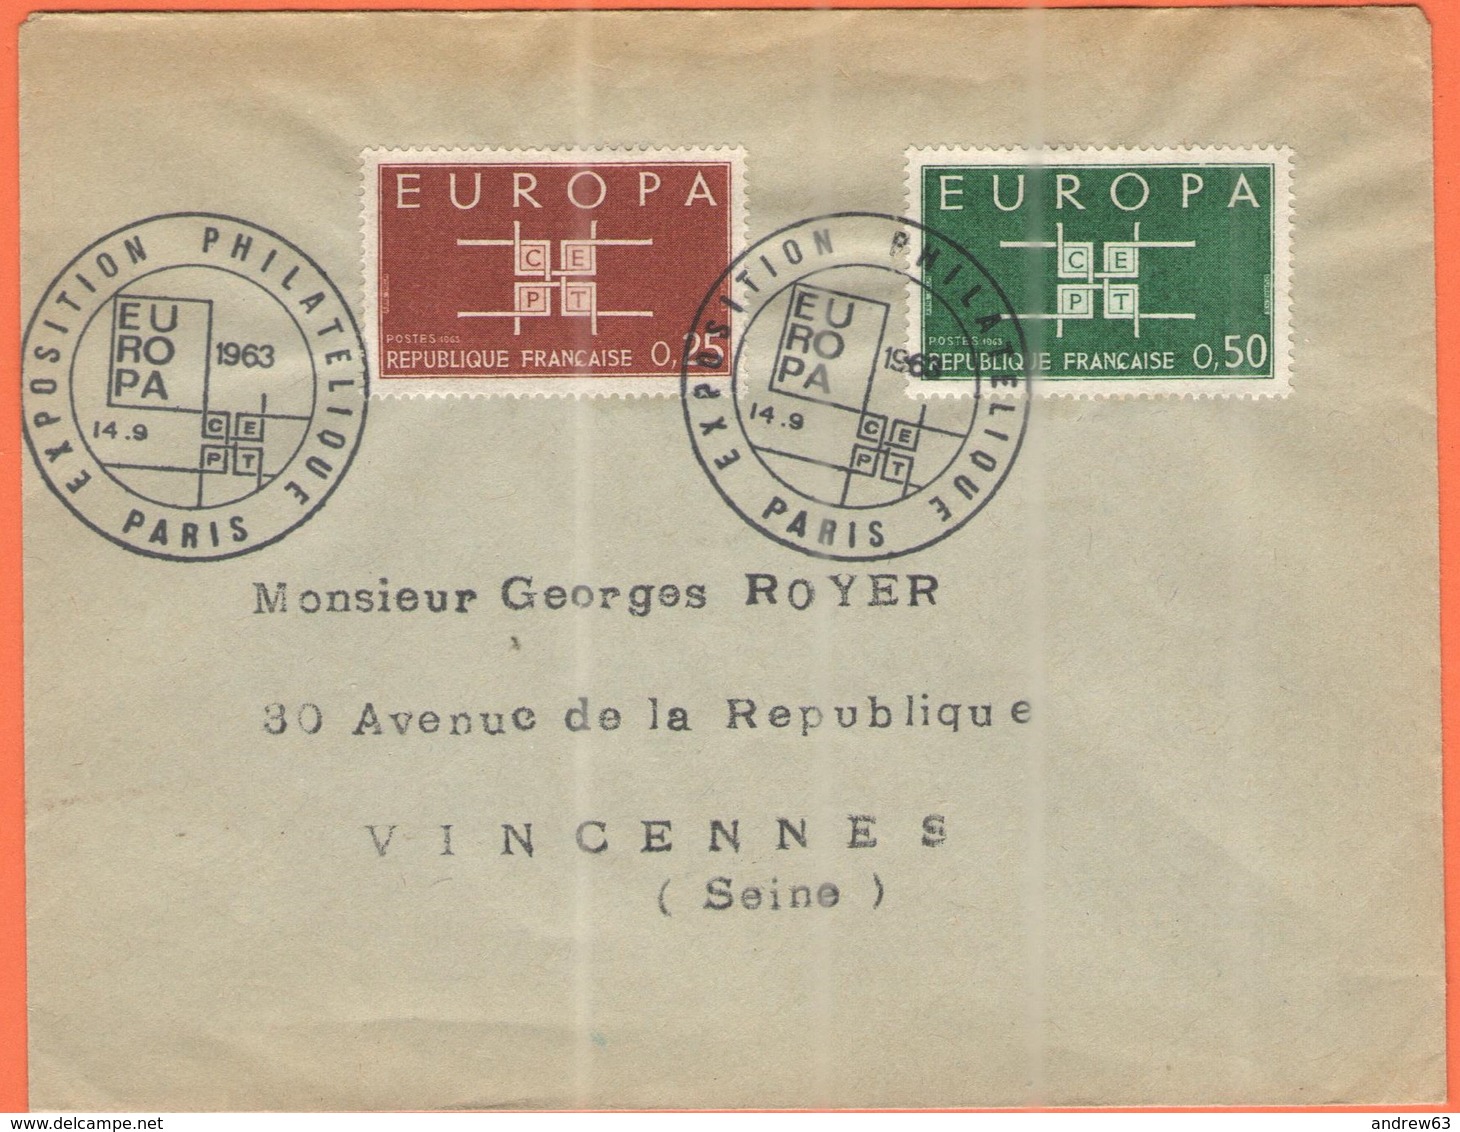 FRANCIA - France - 1963 - 0,25 + 0,50 Europa Cept - FDC - Viaggiata Da Paris Per Vincennes - 1963